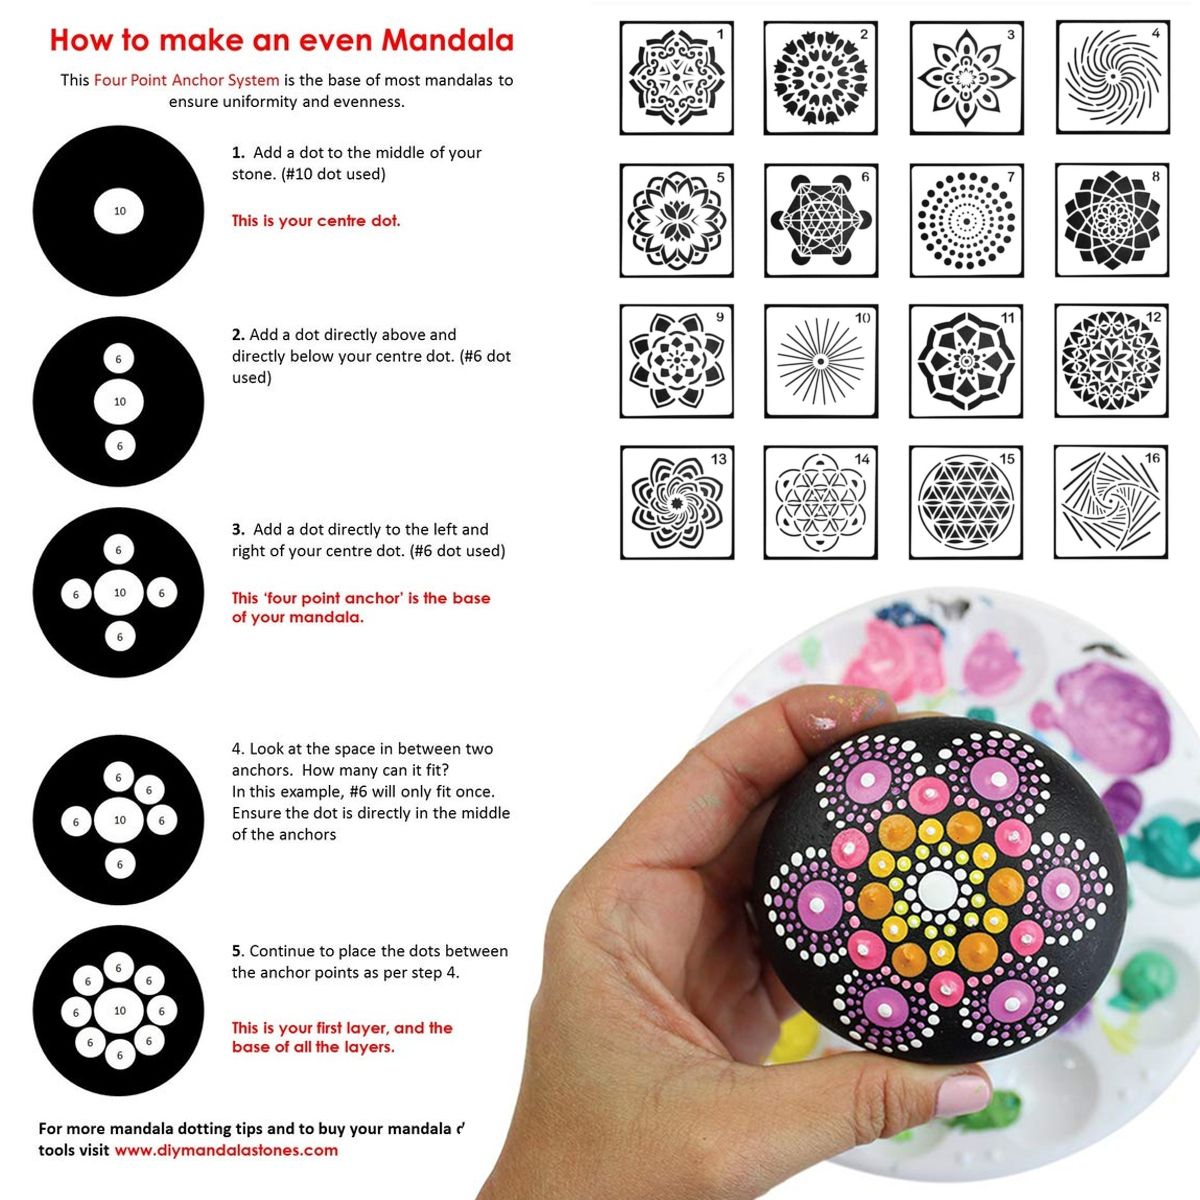 16Pcs-Mandala-Dotting-Tools-Set-Rock-Painting-Kit-Nail-Art-Pen-Paint-Stencil-1687383